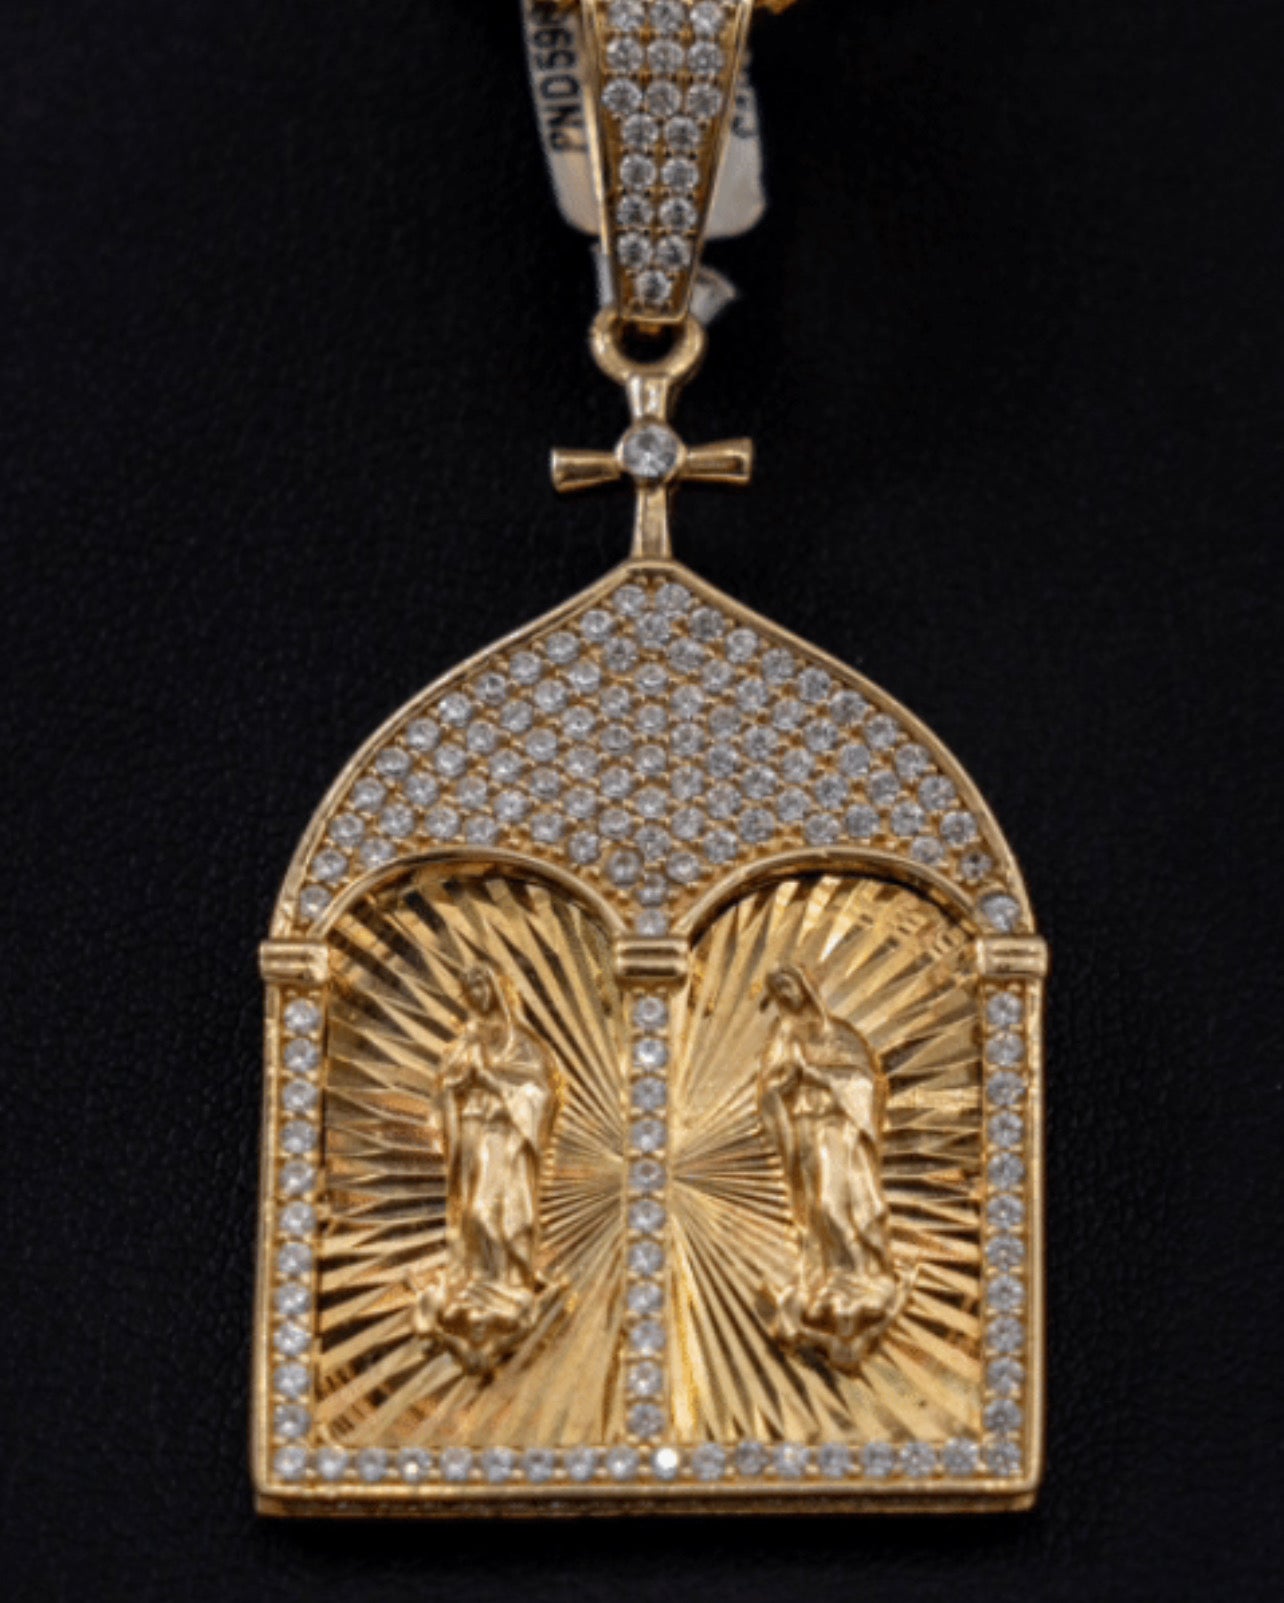 Virgen Maria Pendant 10K Yellow Gold With Zirconia / 10.6gr